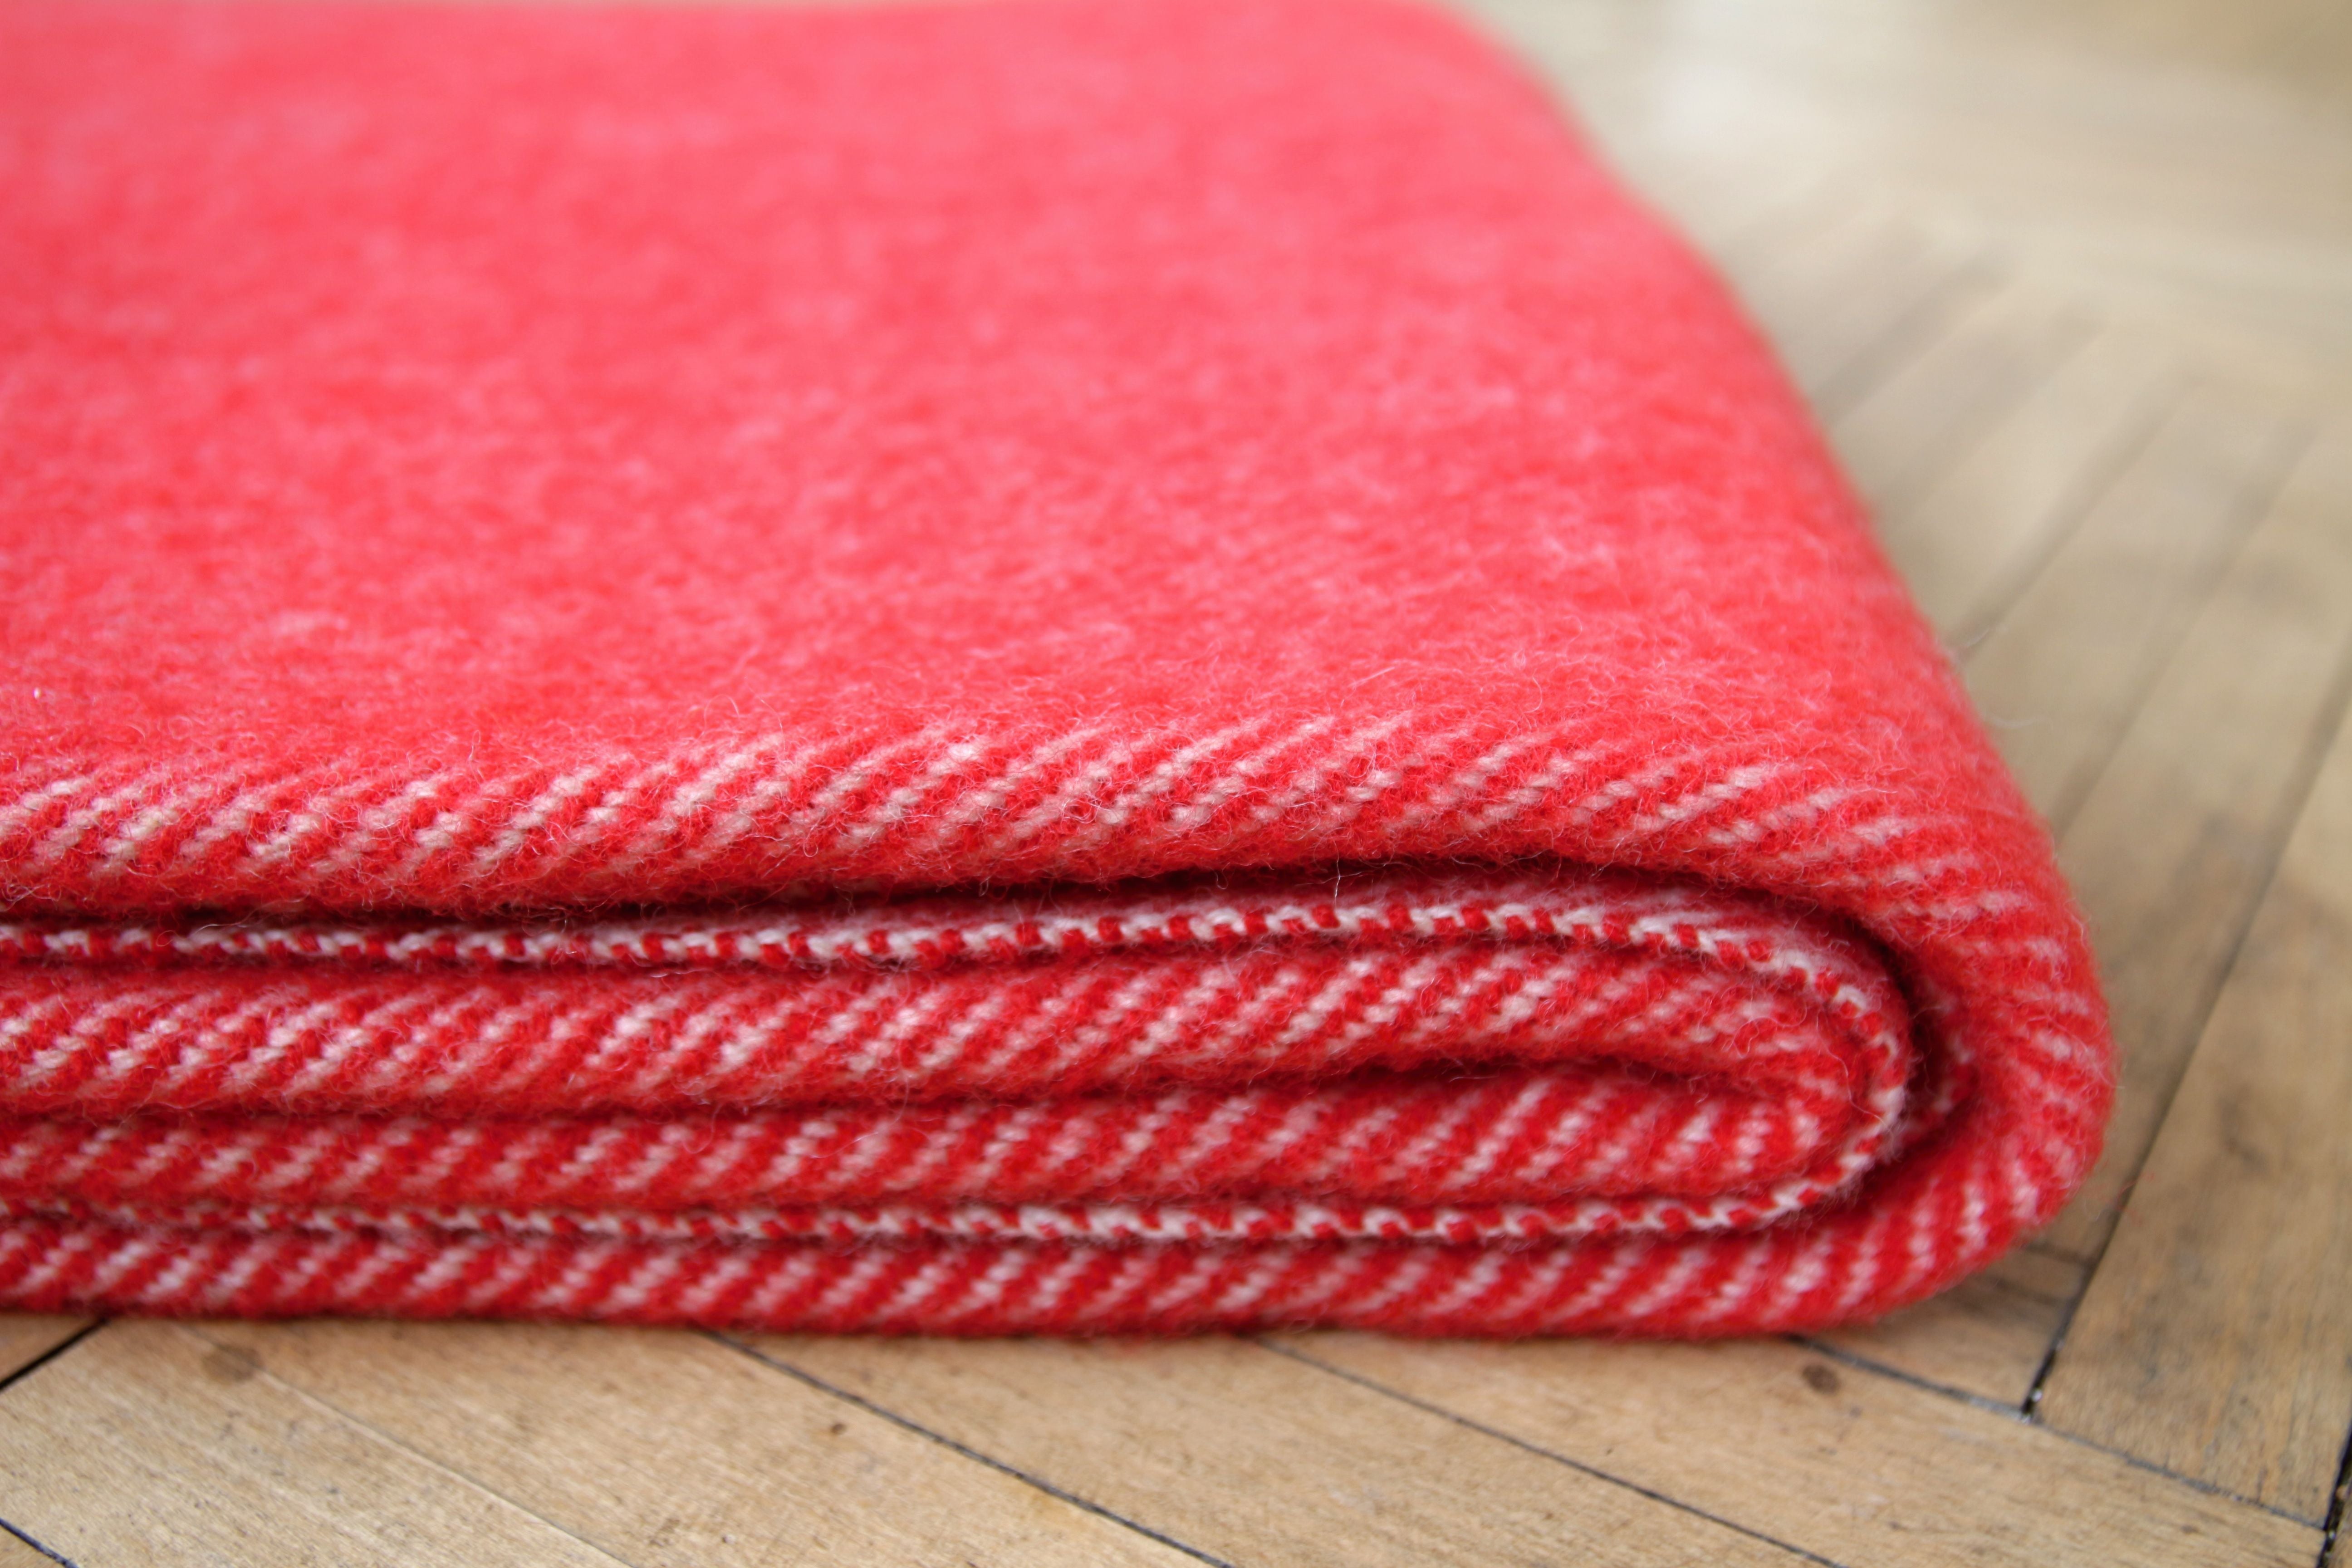 Sheep wool blanket - red